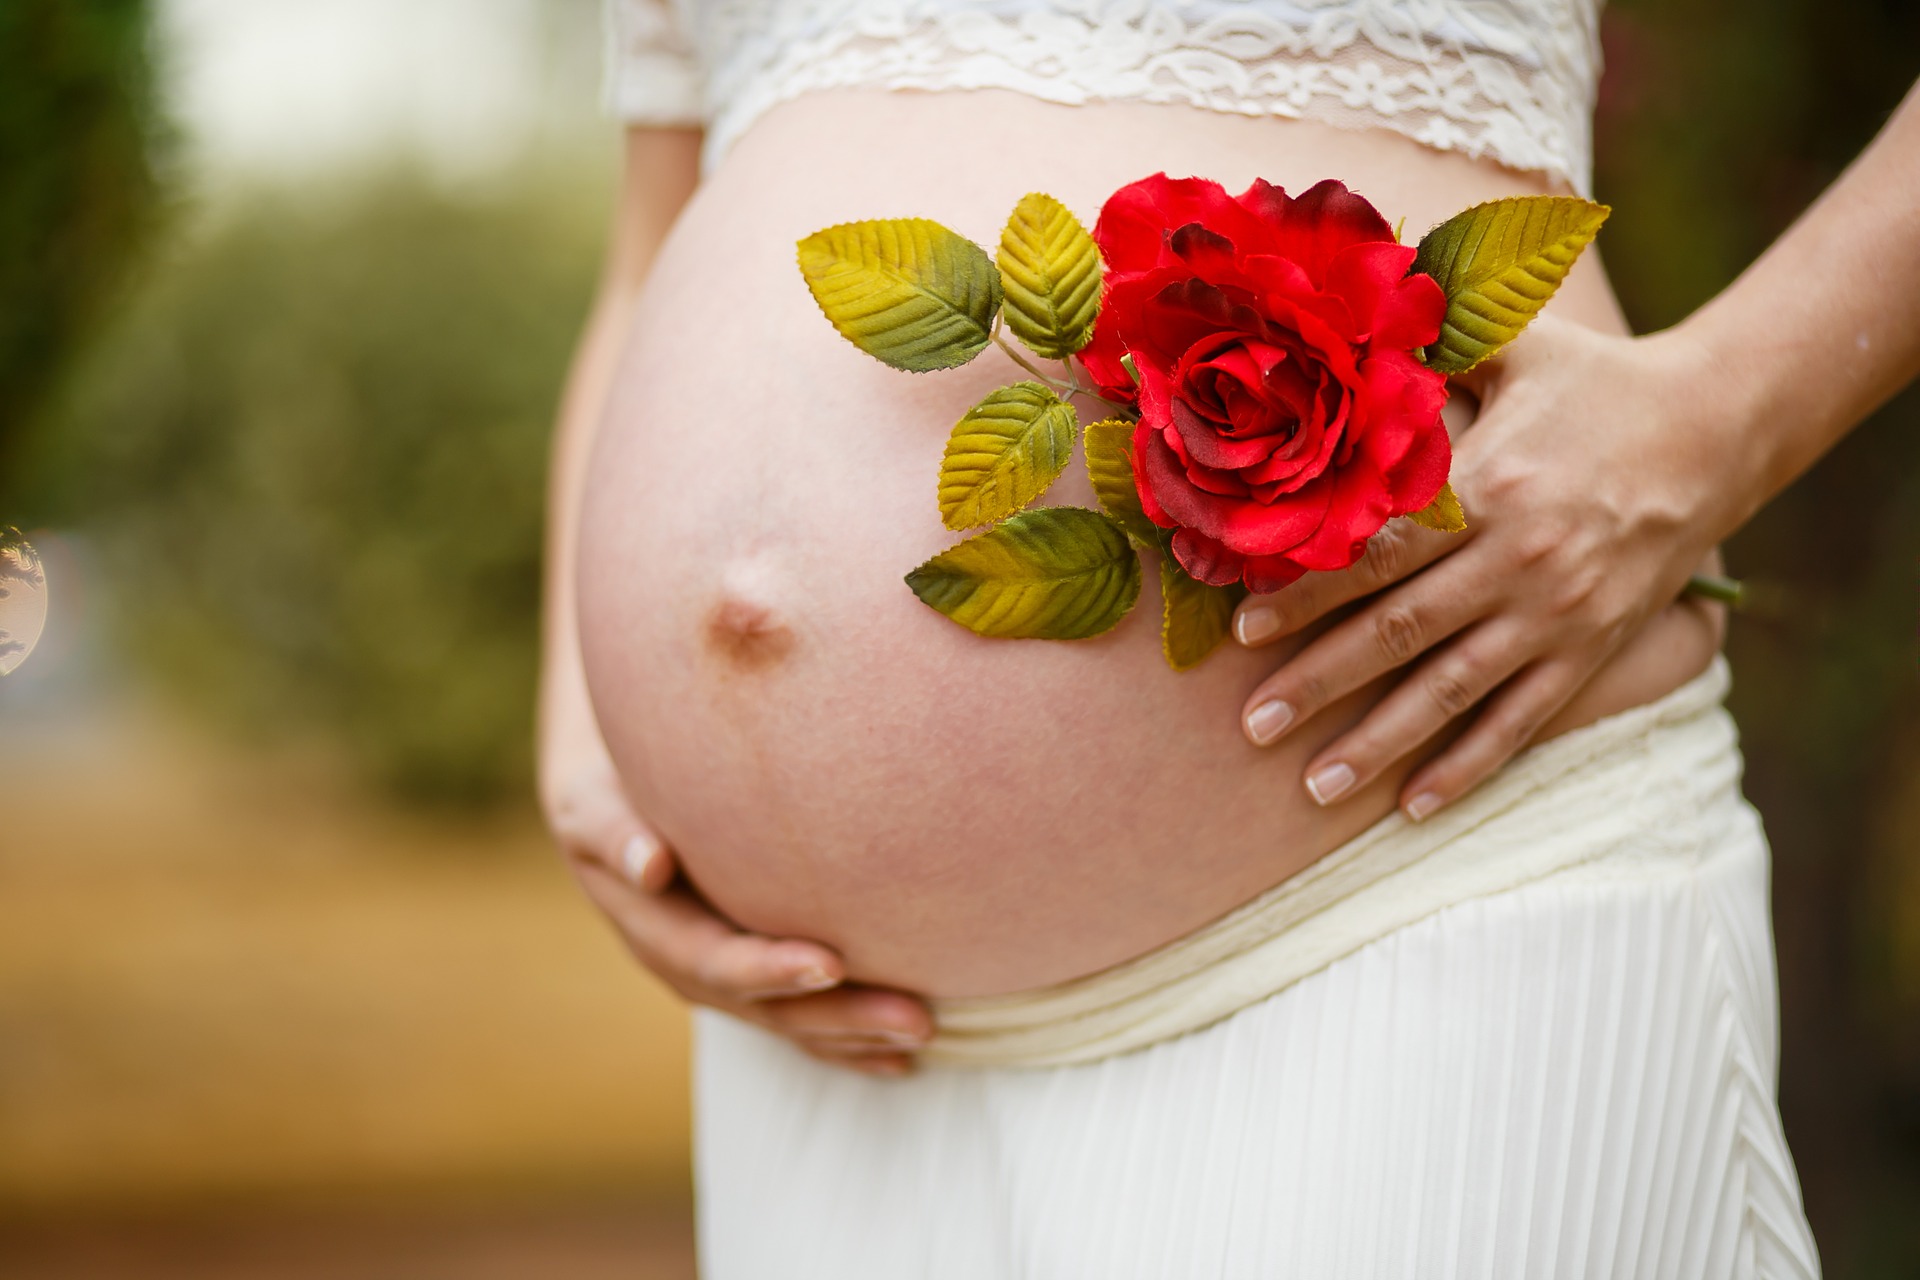 Незапланированная беременность: как преодолеть депрессию?